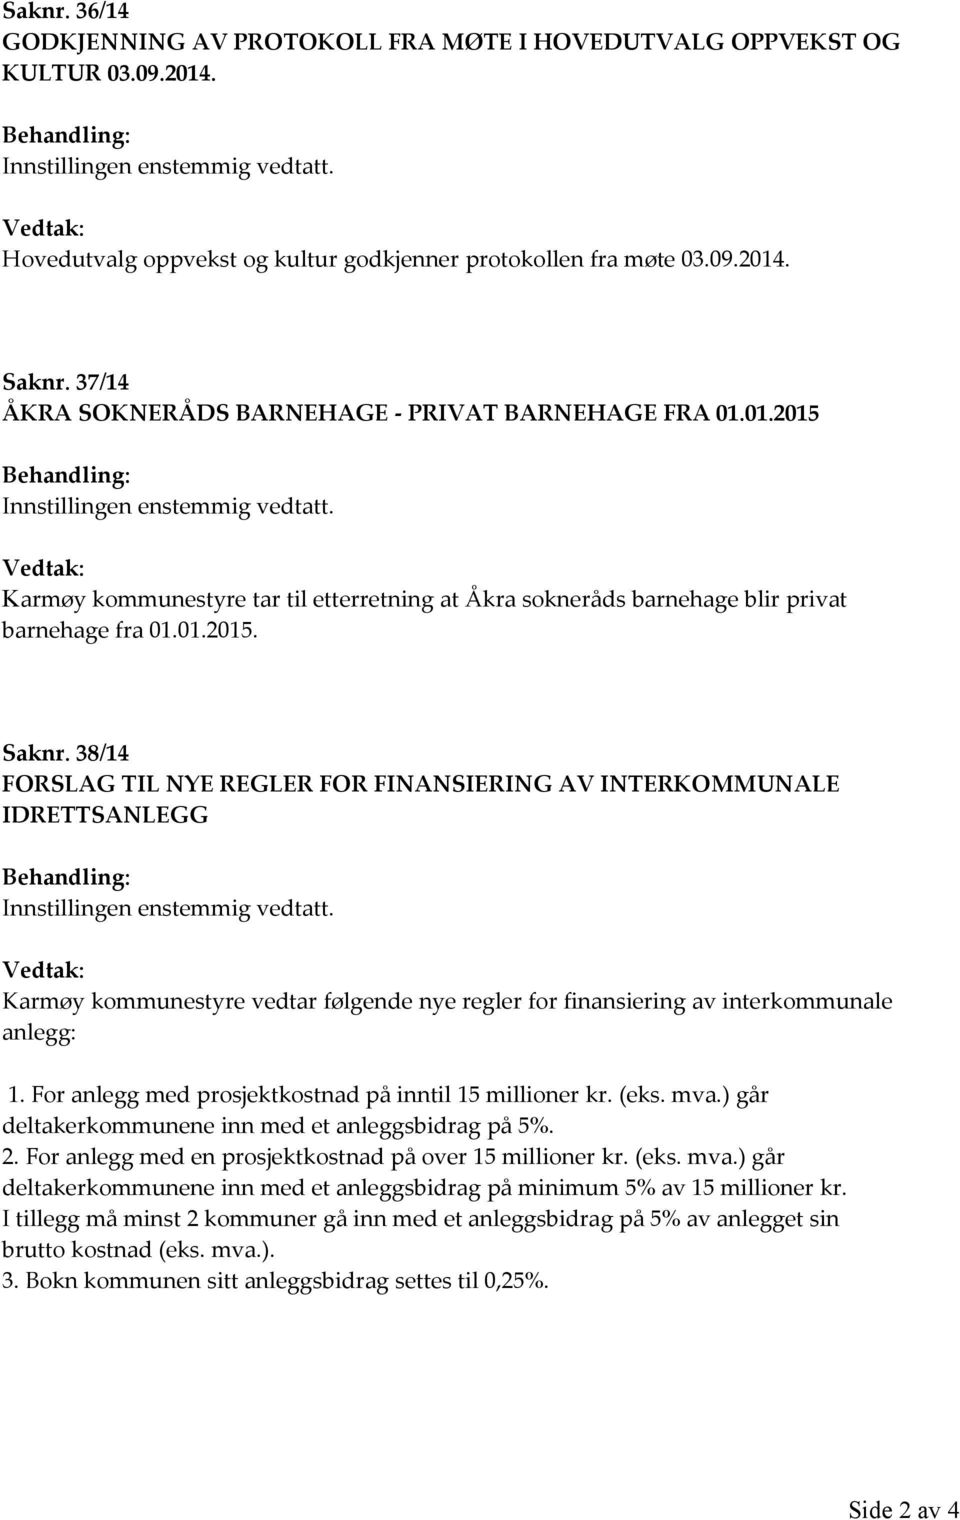 38/14 FORSLAG TIL NYE REGLER FOR FINANSIERING AV INTERKOMMUNALE IDRETTSANLEGG Karmøy kommunestyre vedtar følgende nye regler for finansiering av interkommunale anlegg: 1.